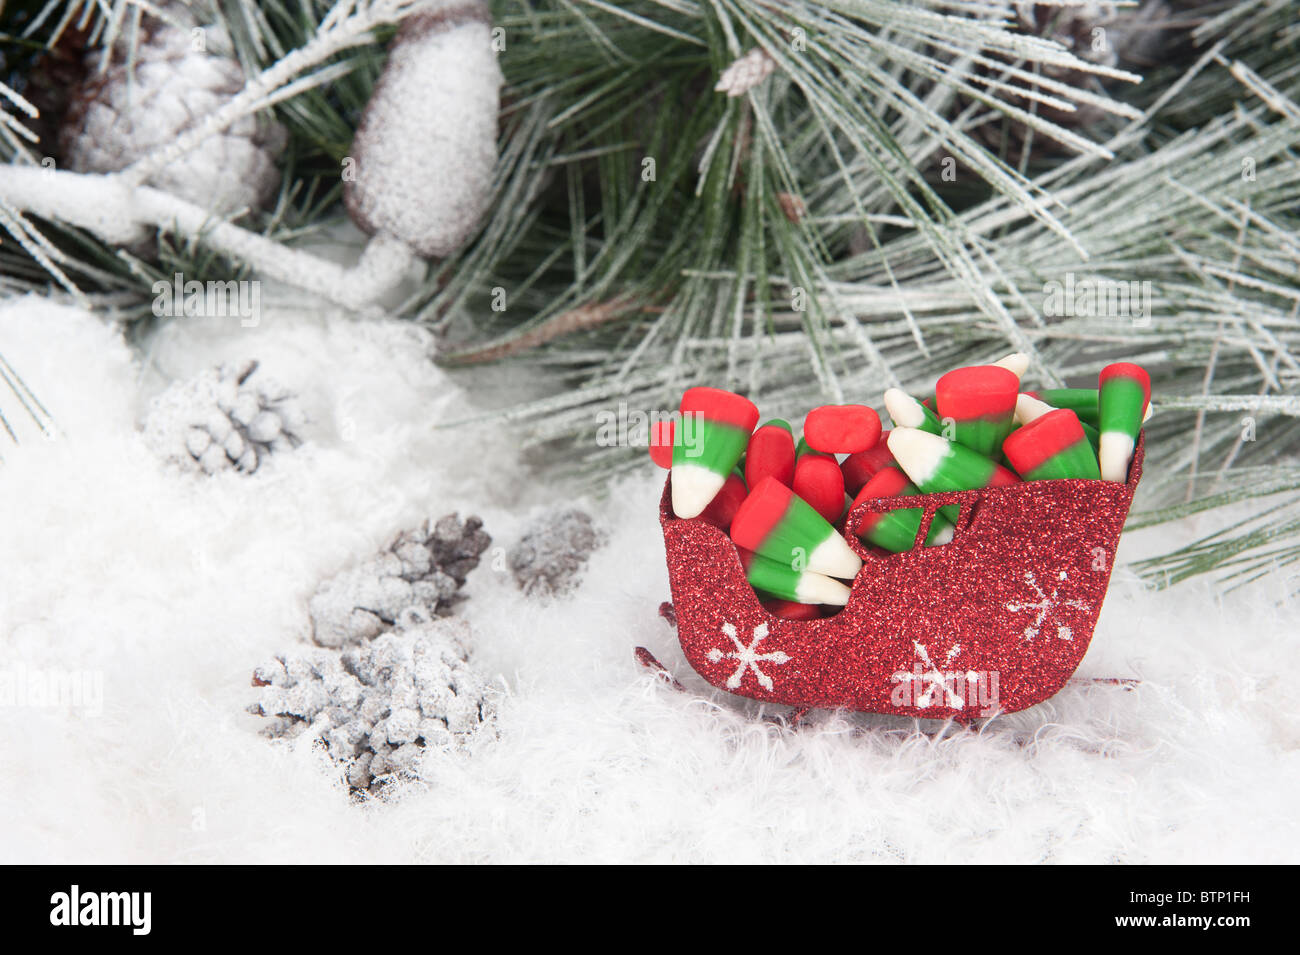 Portrait d'un traîneau de Noël rempli de maïs bonbons colorés maison de vacances situé dans un arbre de pin, de neige fond. Banque D'Images